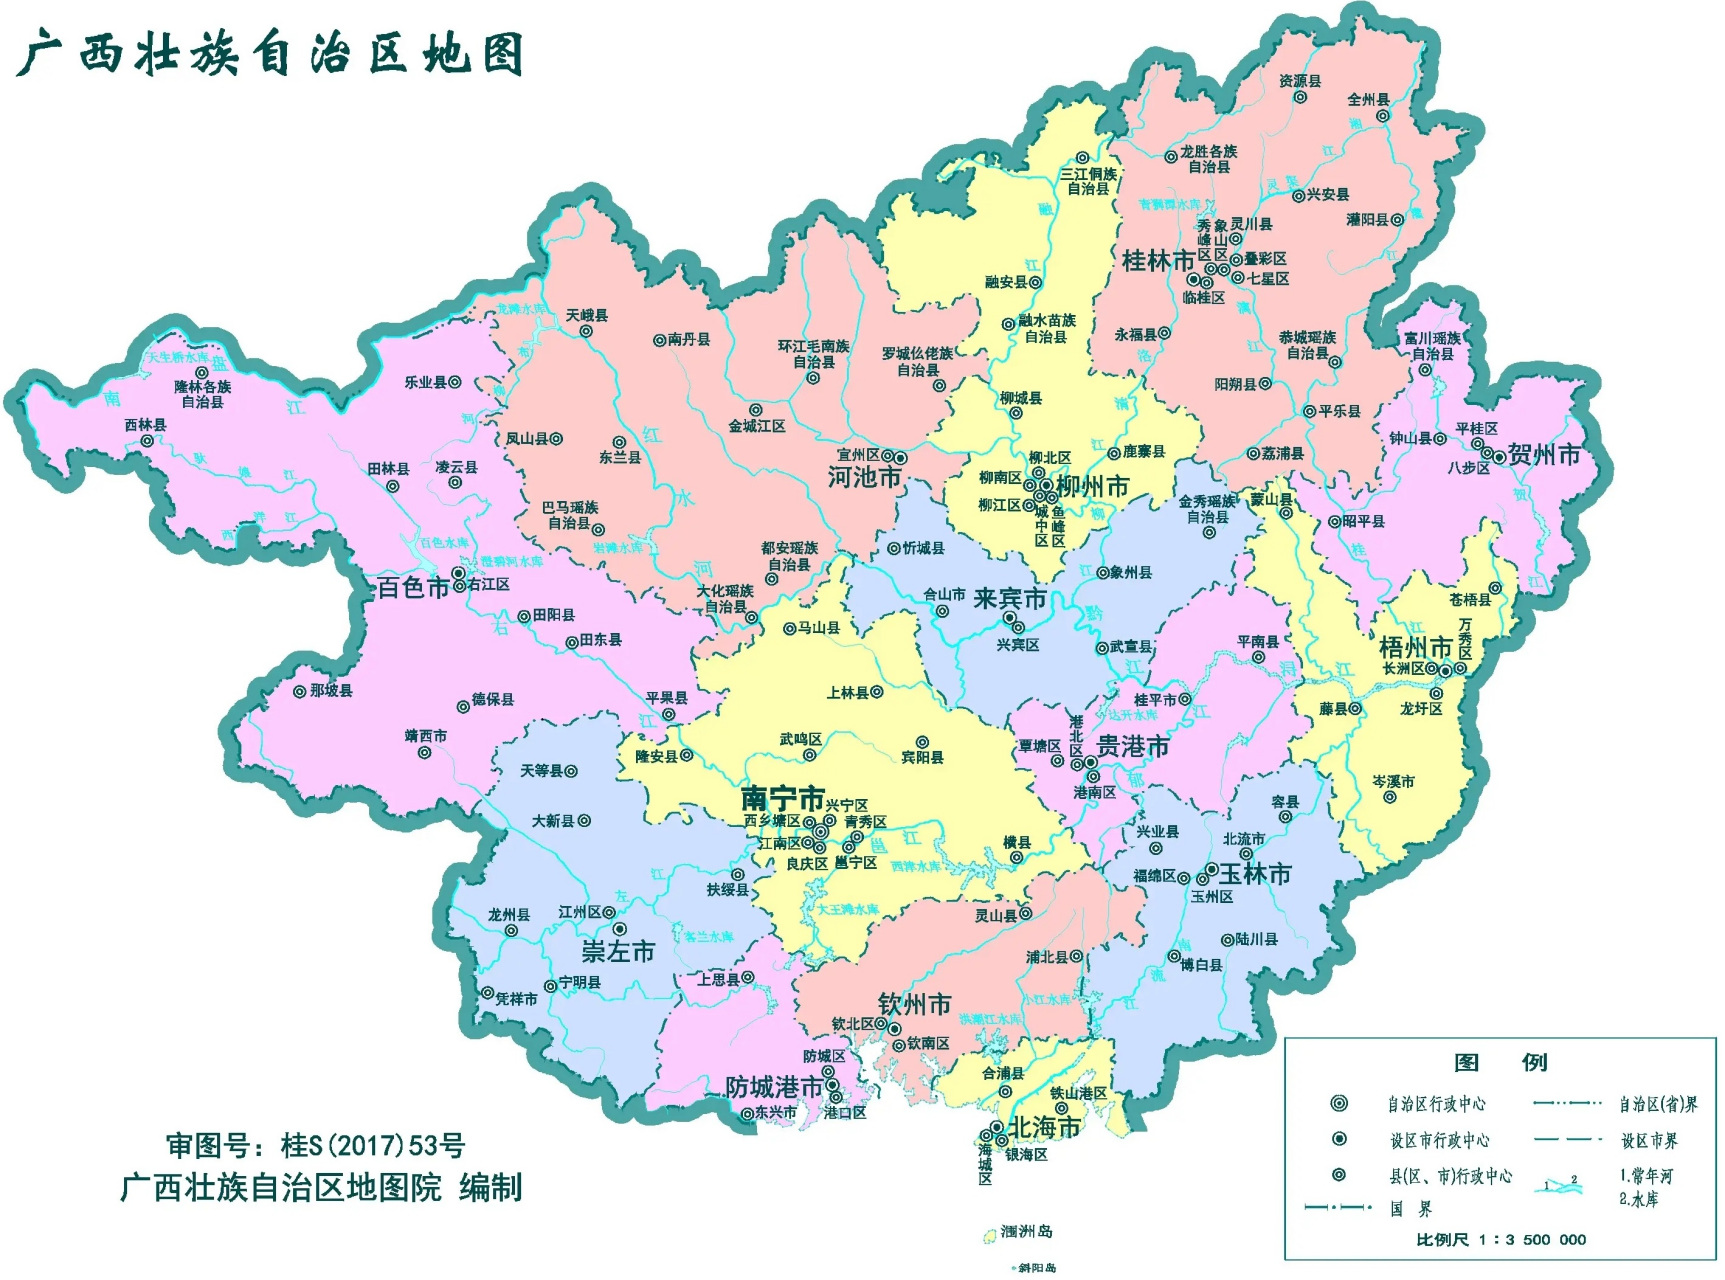 广西壮族自治区政区图(2017年)